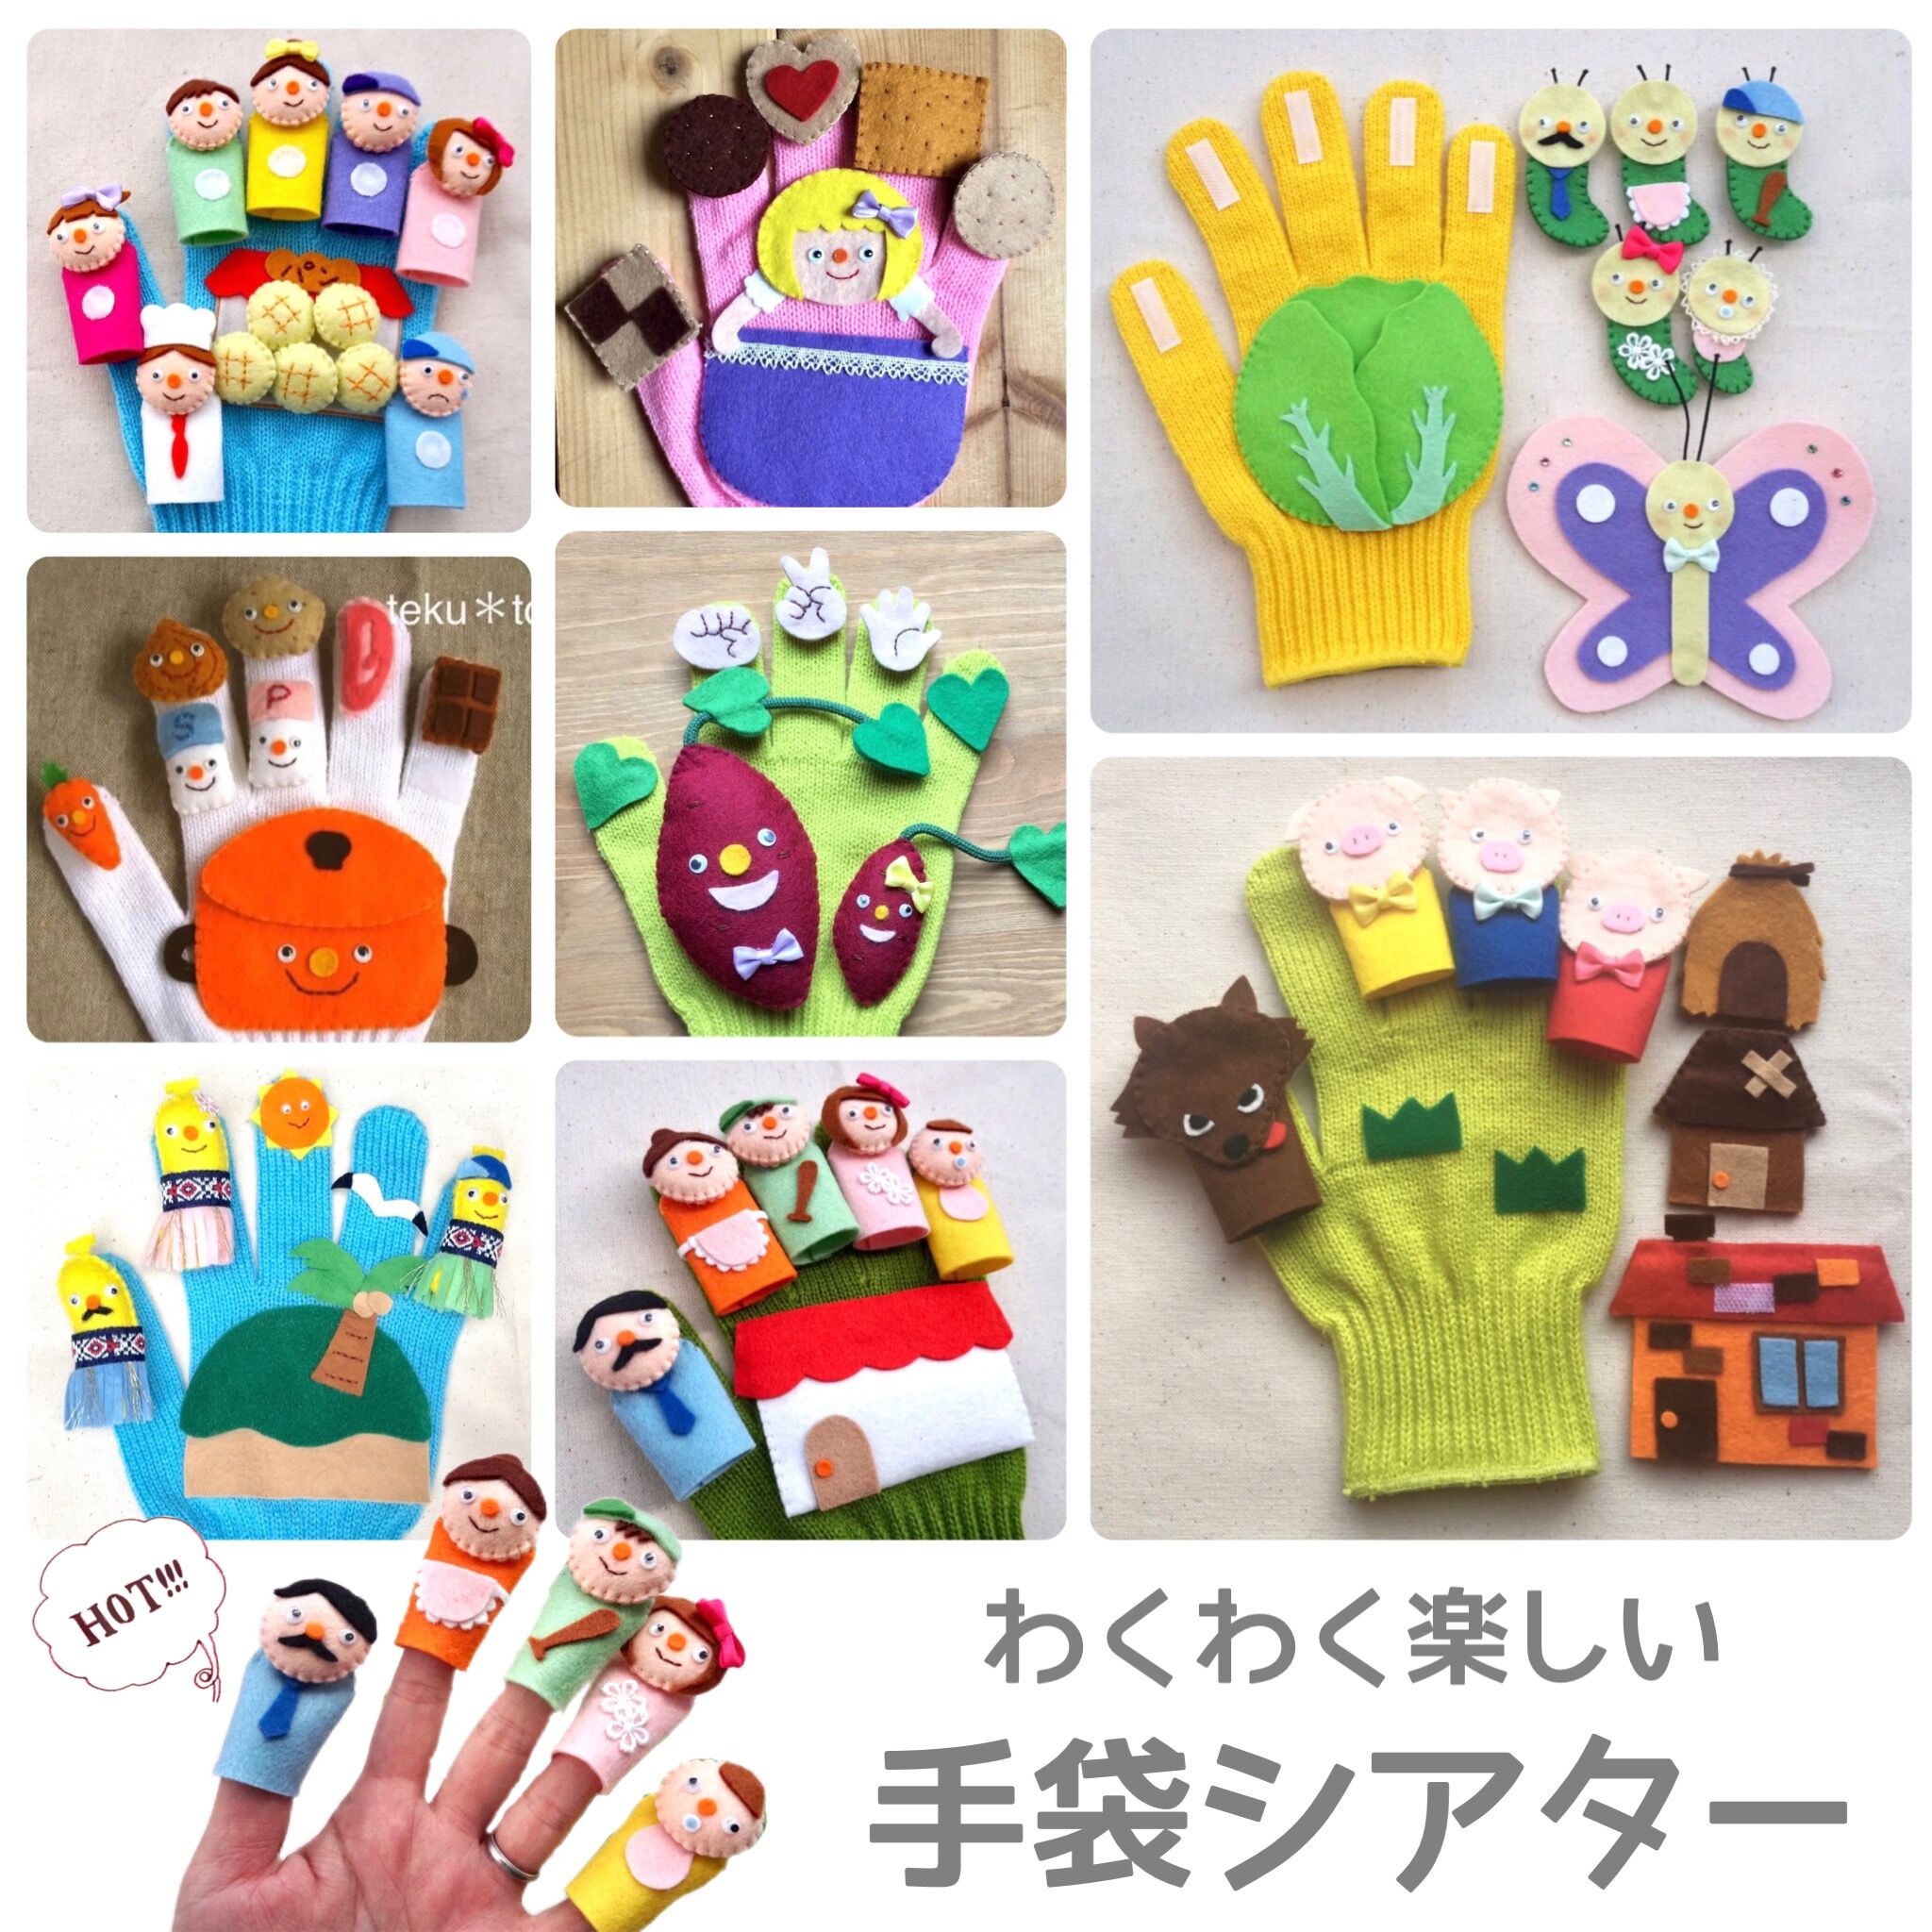 まとめ買いお買い得手袋シアター3999円→3555円 | capacitasalud.com